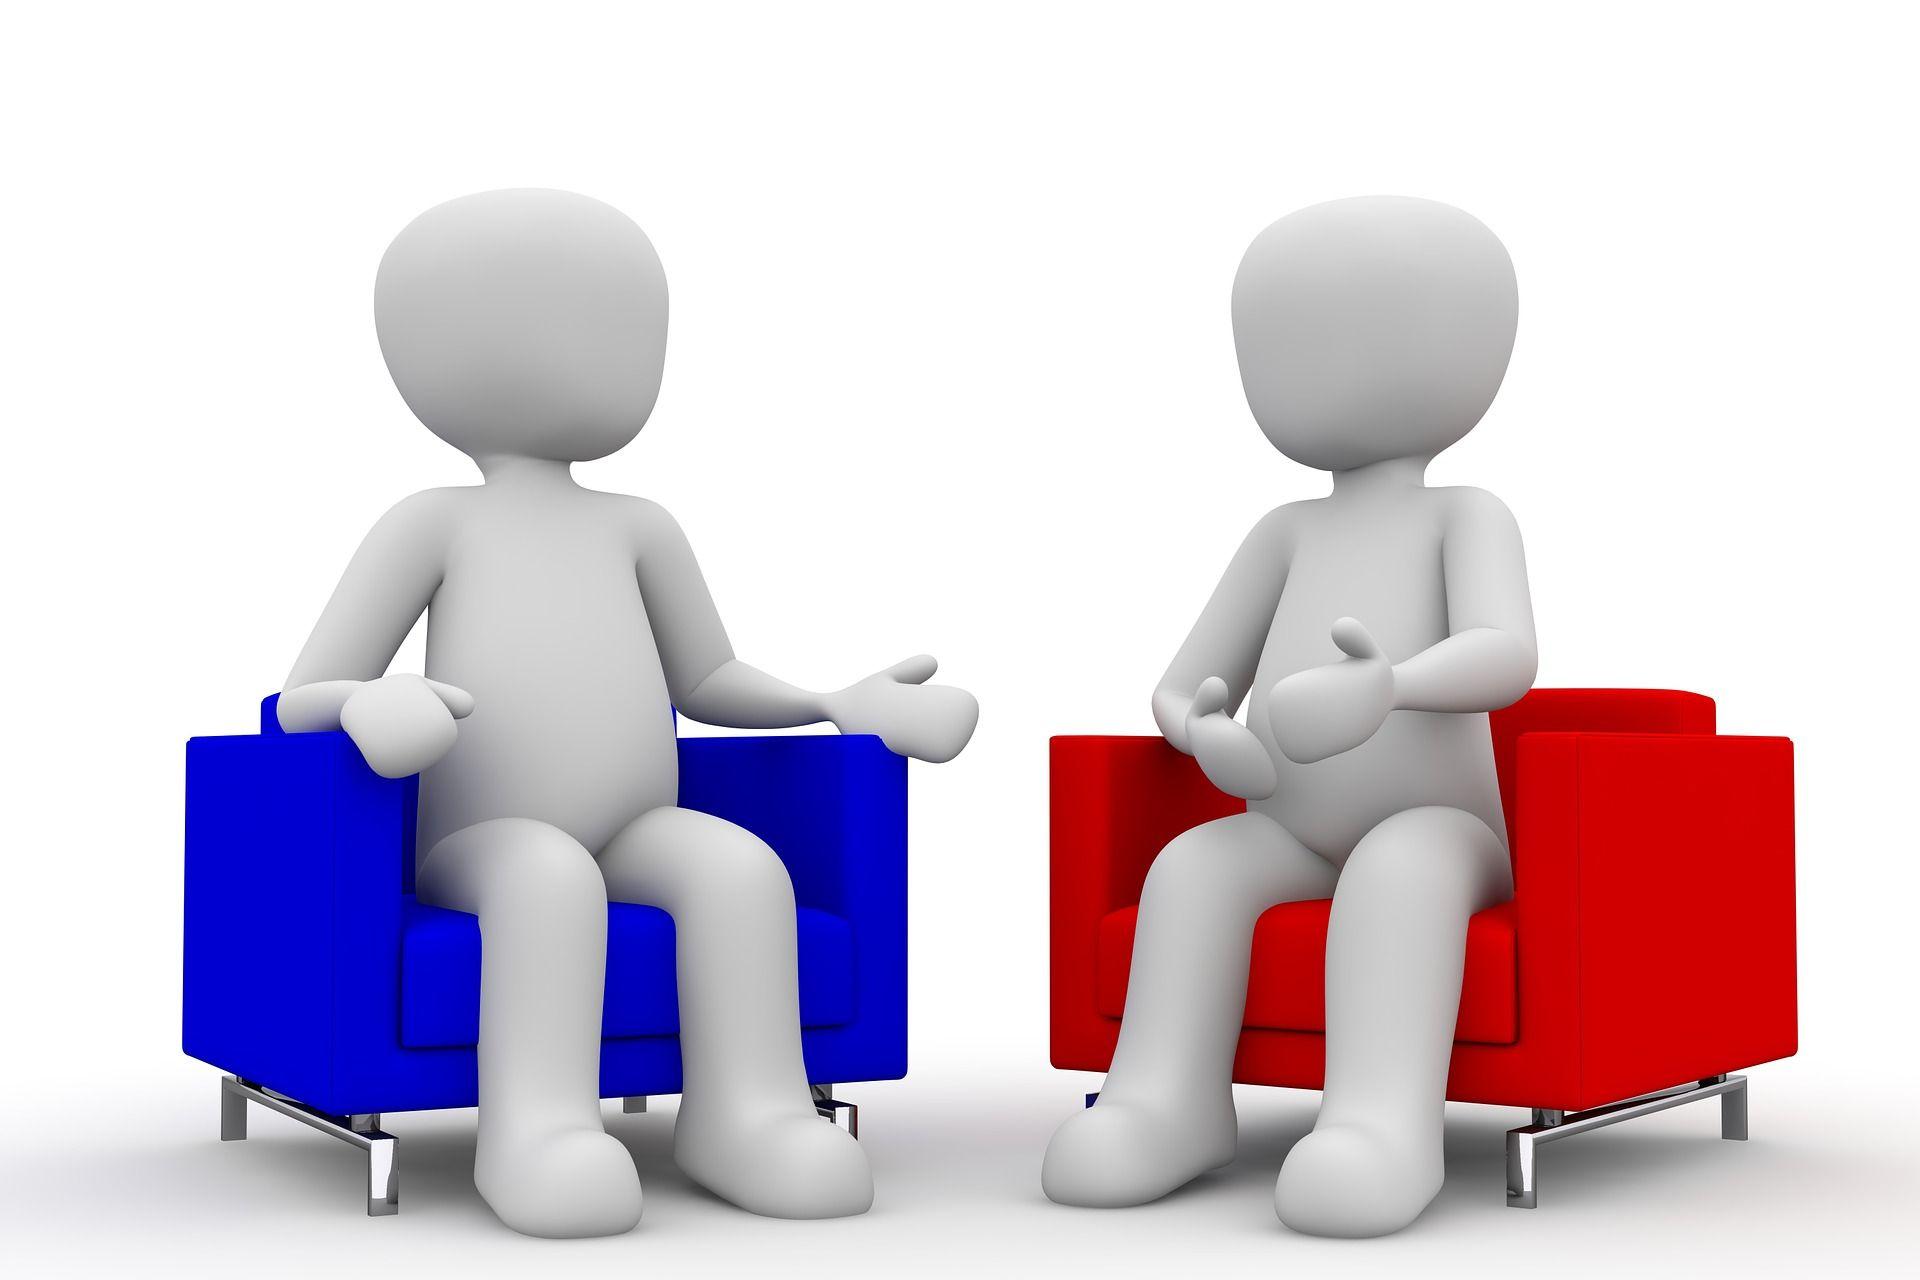 Zwei Figuren auf einem blauen und einem roten Sessel, die ein Gespräch führen